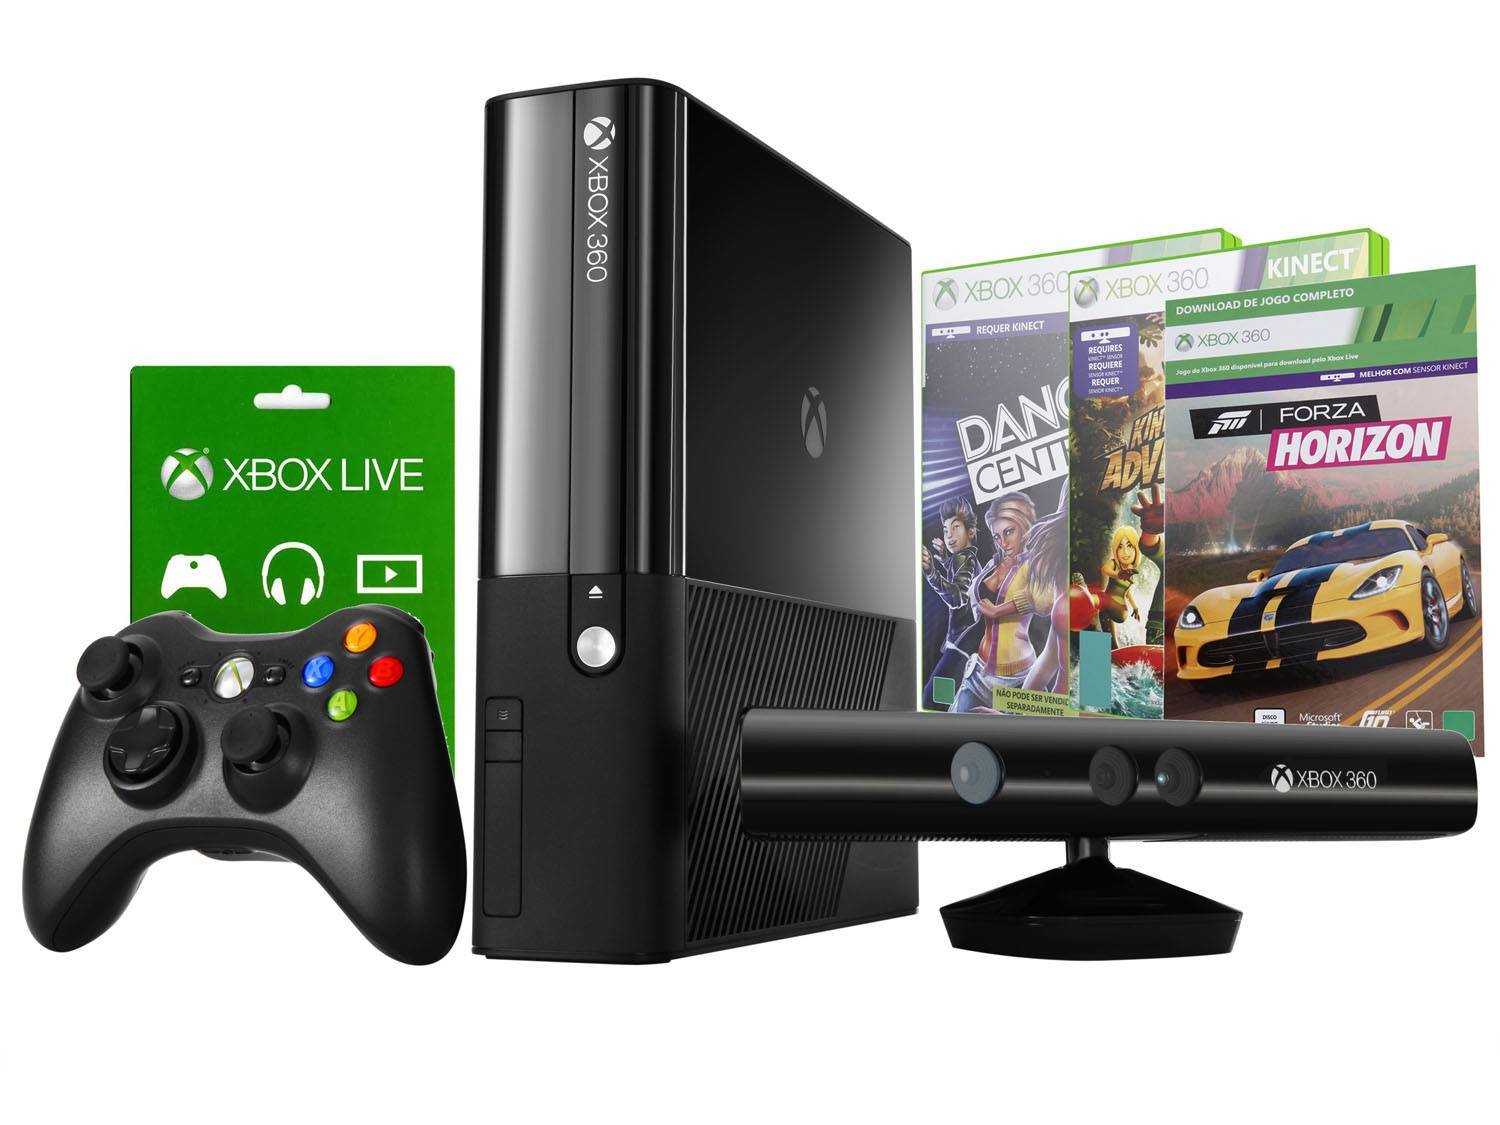 Legends купить xbox. Игровая приставка Икс бокс 360. Xbox 360 250gb Kinect. Приставка Xbox 360 комплектация. Игровая приставка Xbox 360 250 GB.